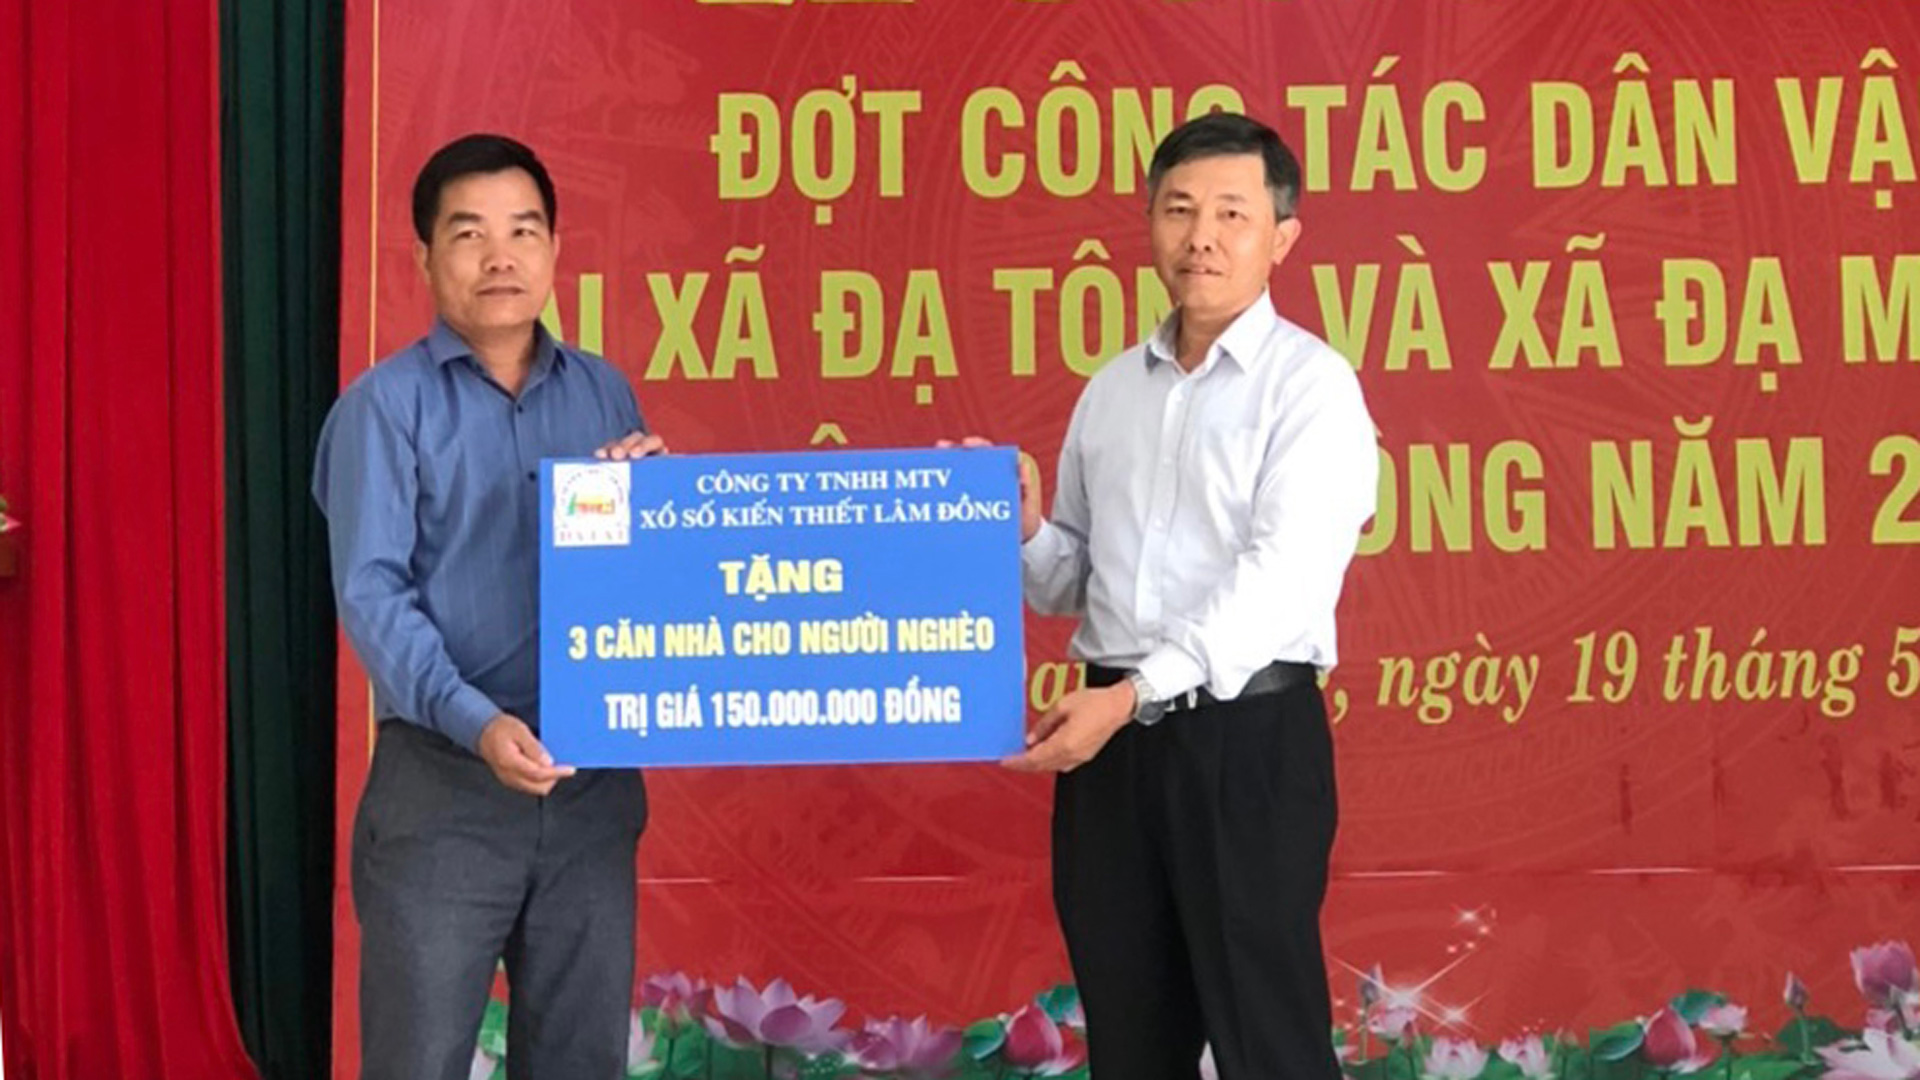 Từ năm 2021 đến nay, Công ty Xổ số Lâm Đồng đã xây 197 căn nhà 
đại đoàn kết cho hộ nghèo